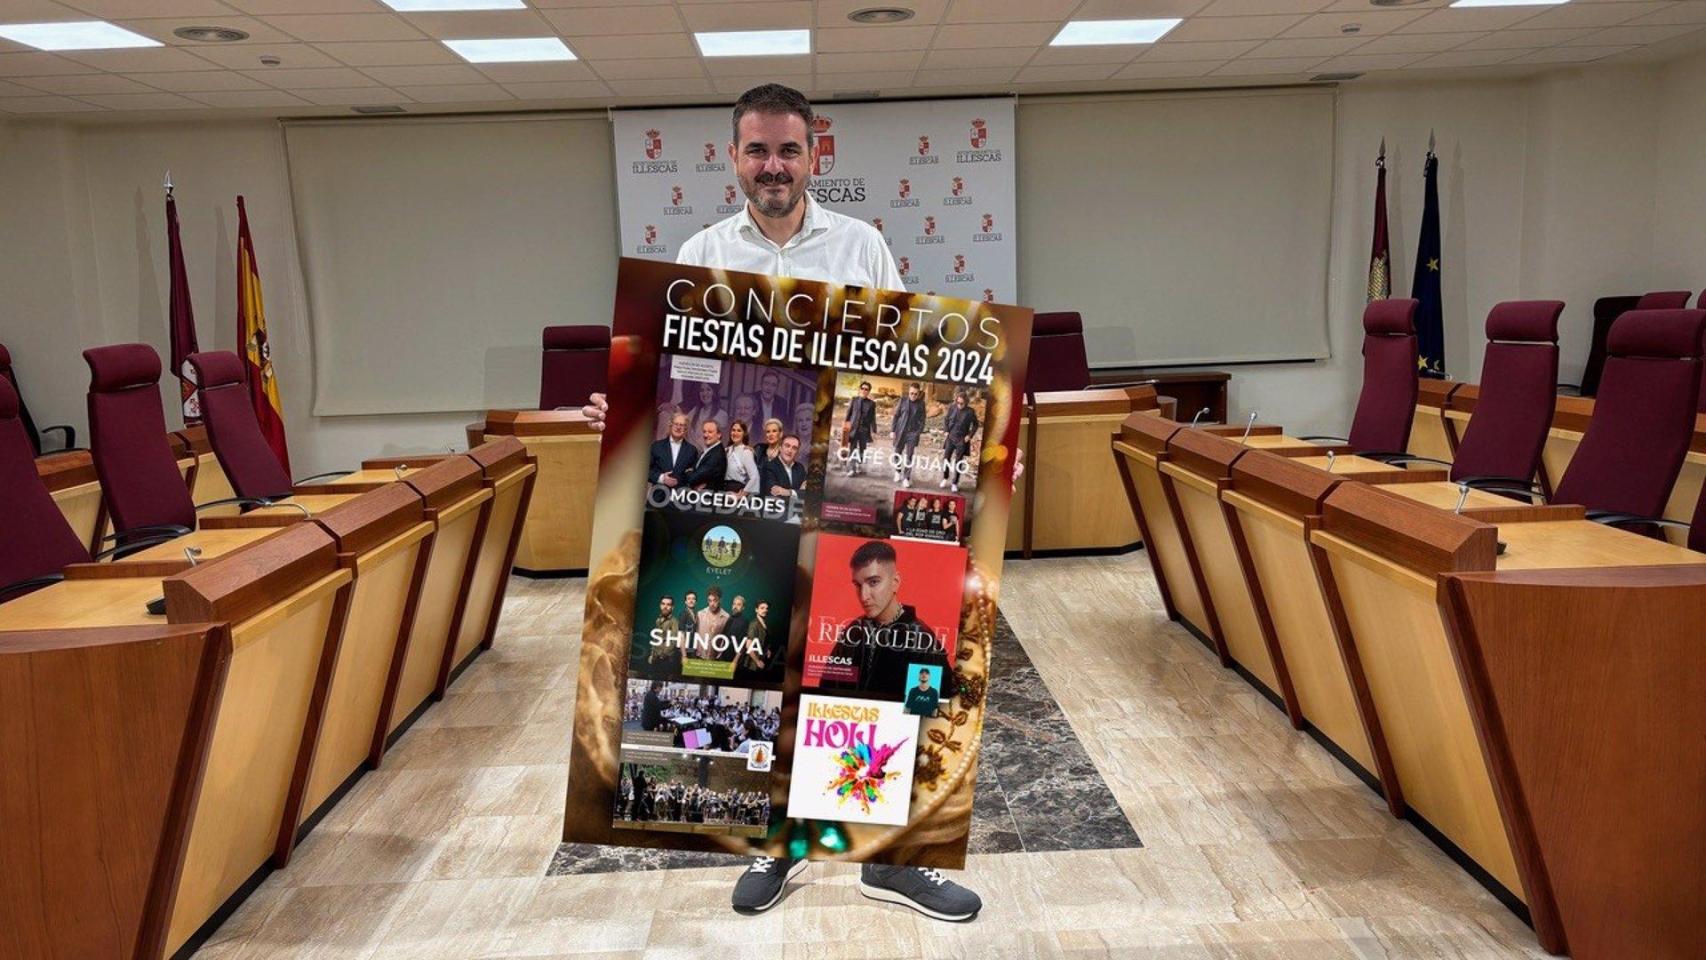 El concejal de Festejos, Raúl Casla, junto al cartel de conciertos. Foto: Ayuntamiento.